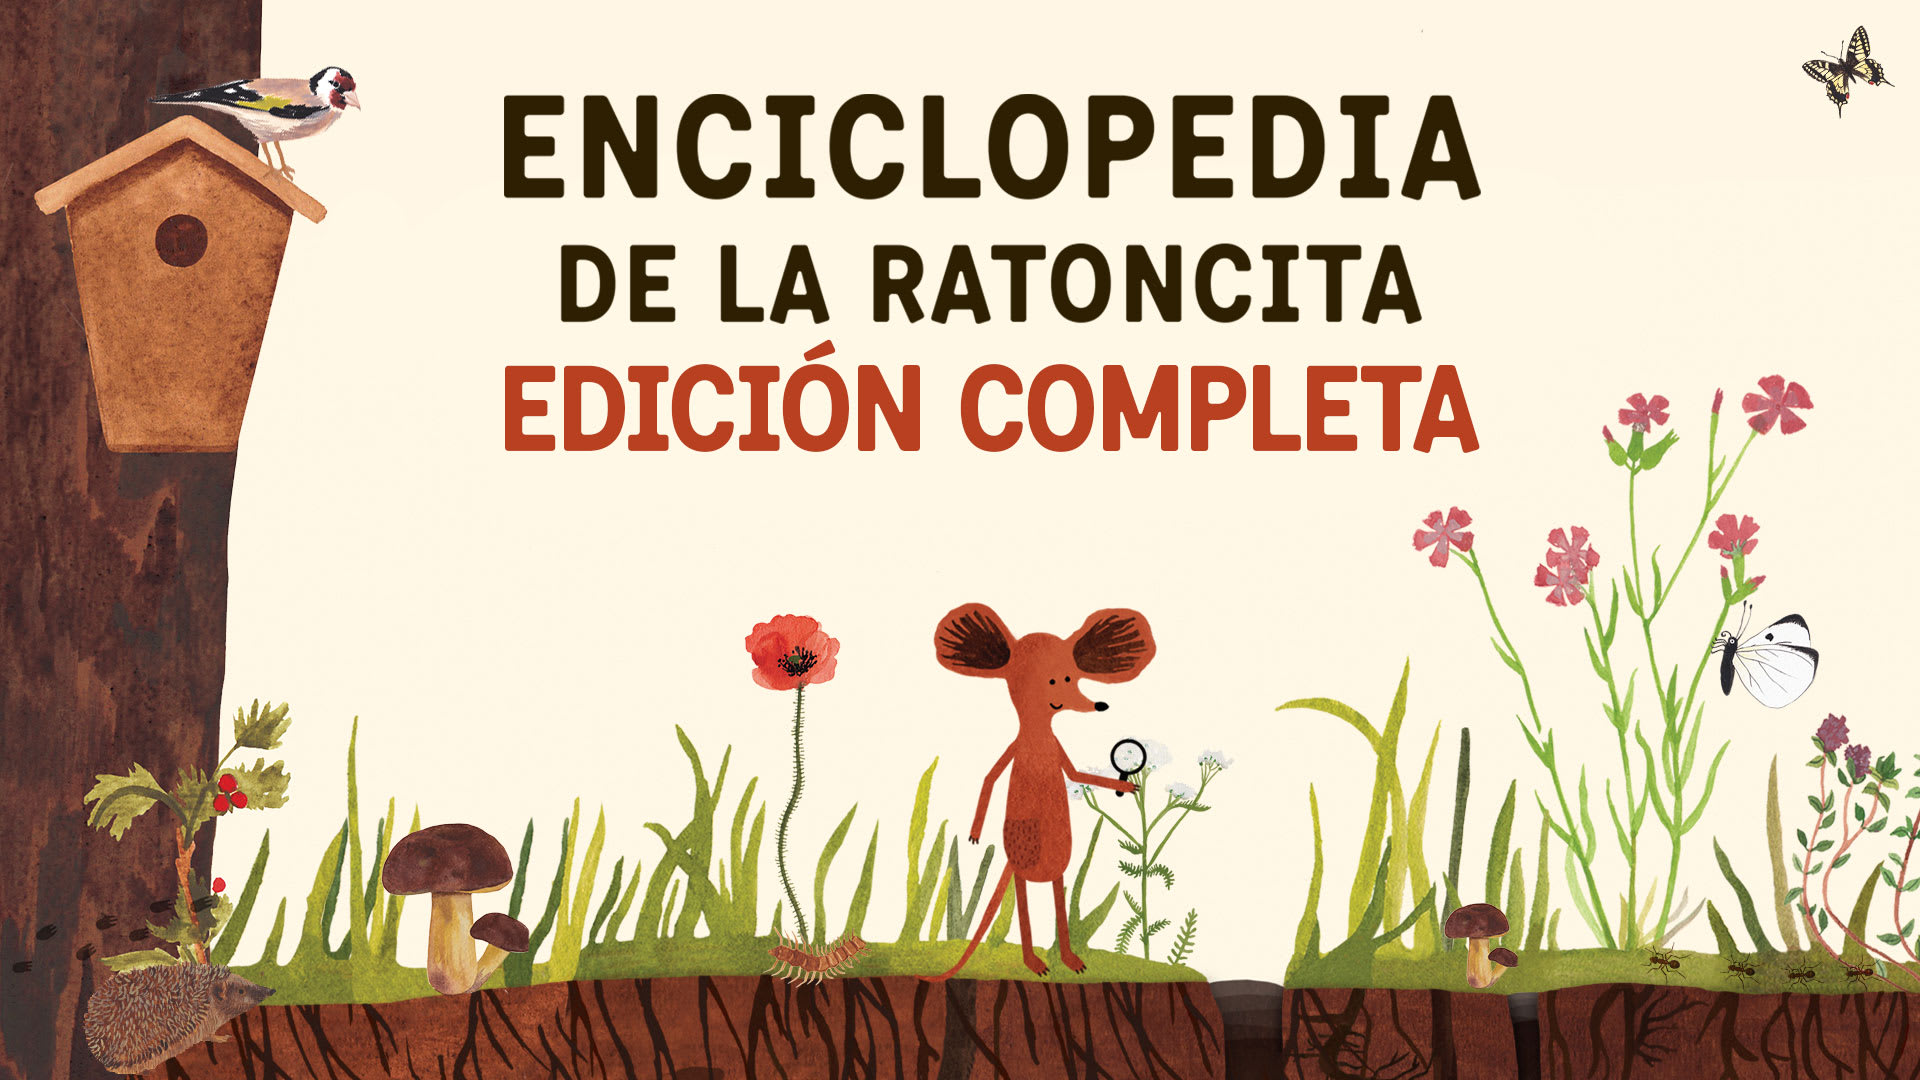 Enciclopedia de la Ratoncita Edición completa 1